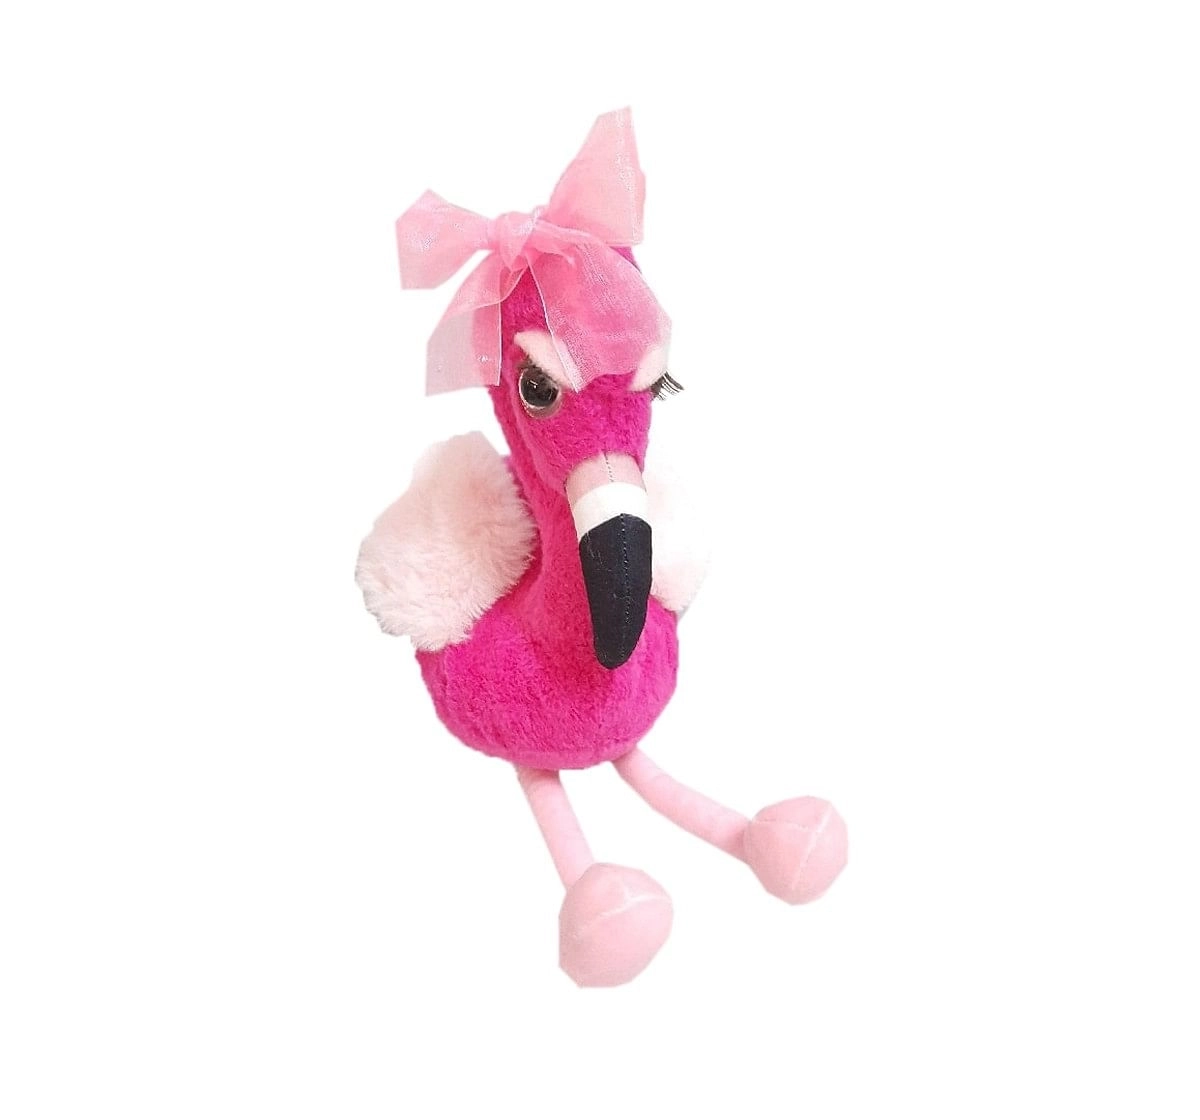 Lash Z Flamingo Soft Toy 14"36Cm